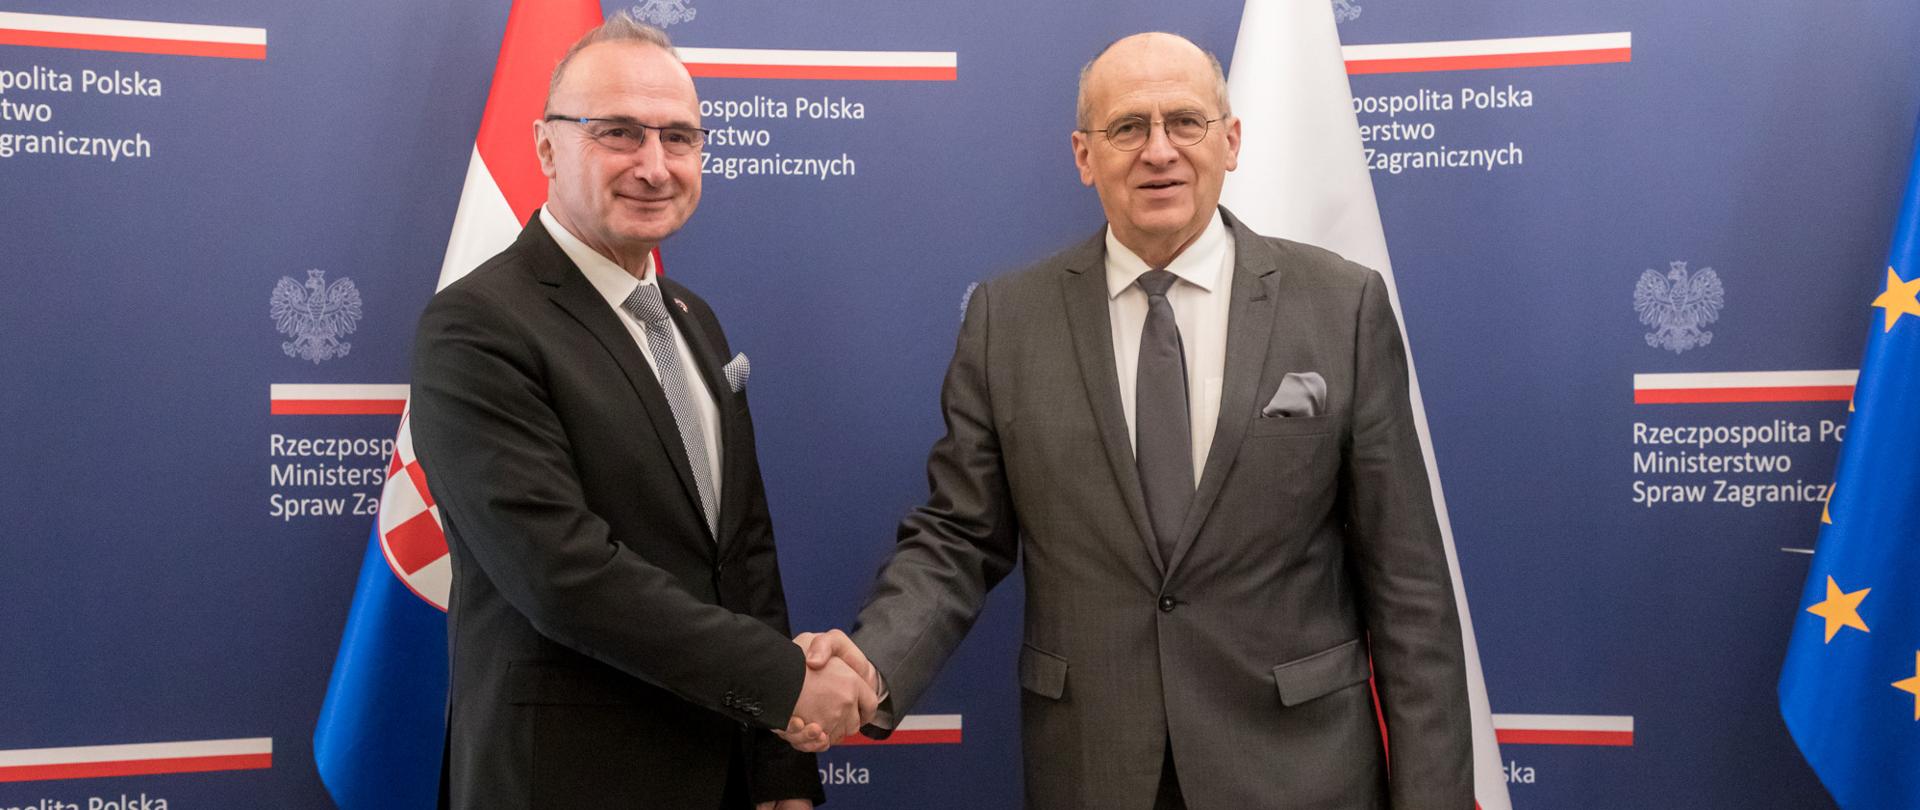 Minister Zbigniew Rau meets Croatian Foreign Minister Gordan Grlić Radman